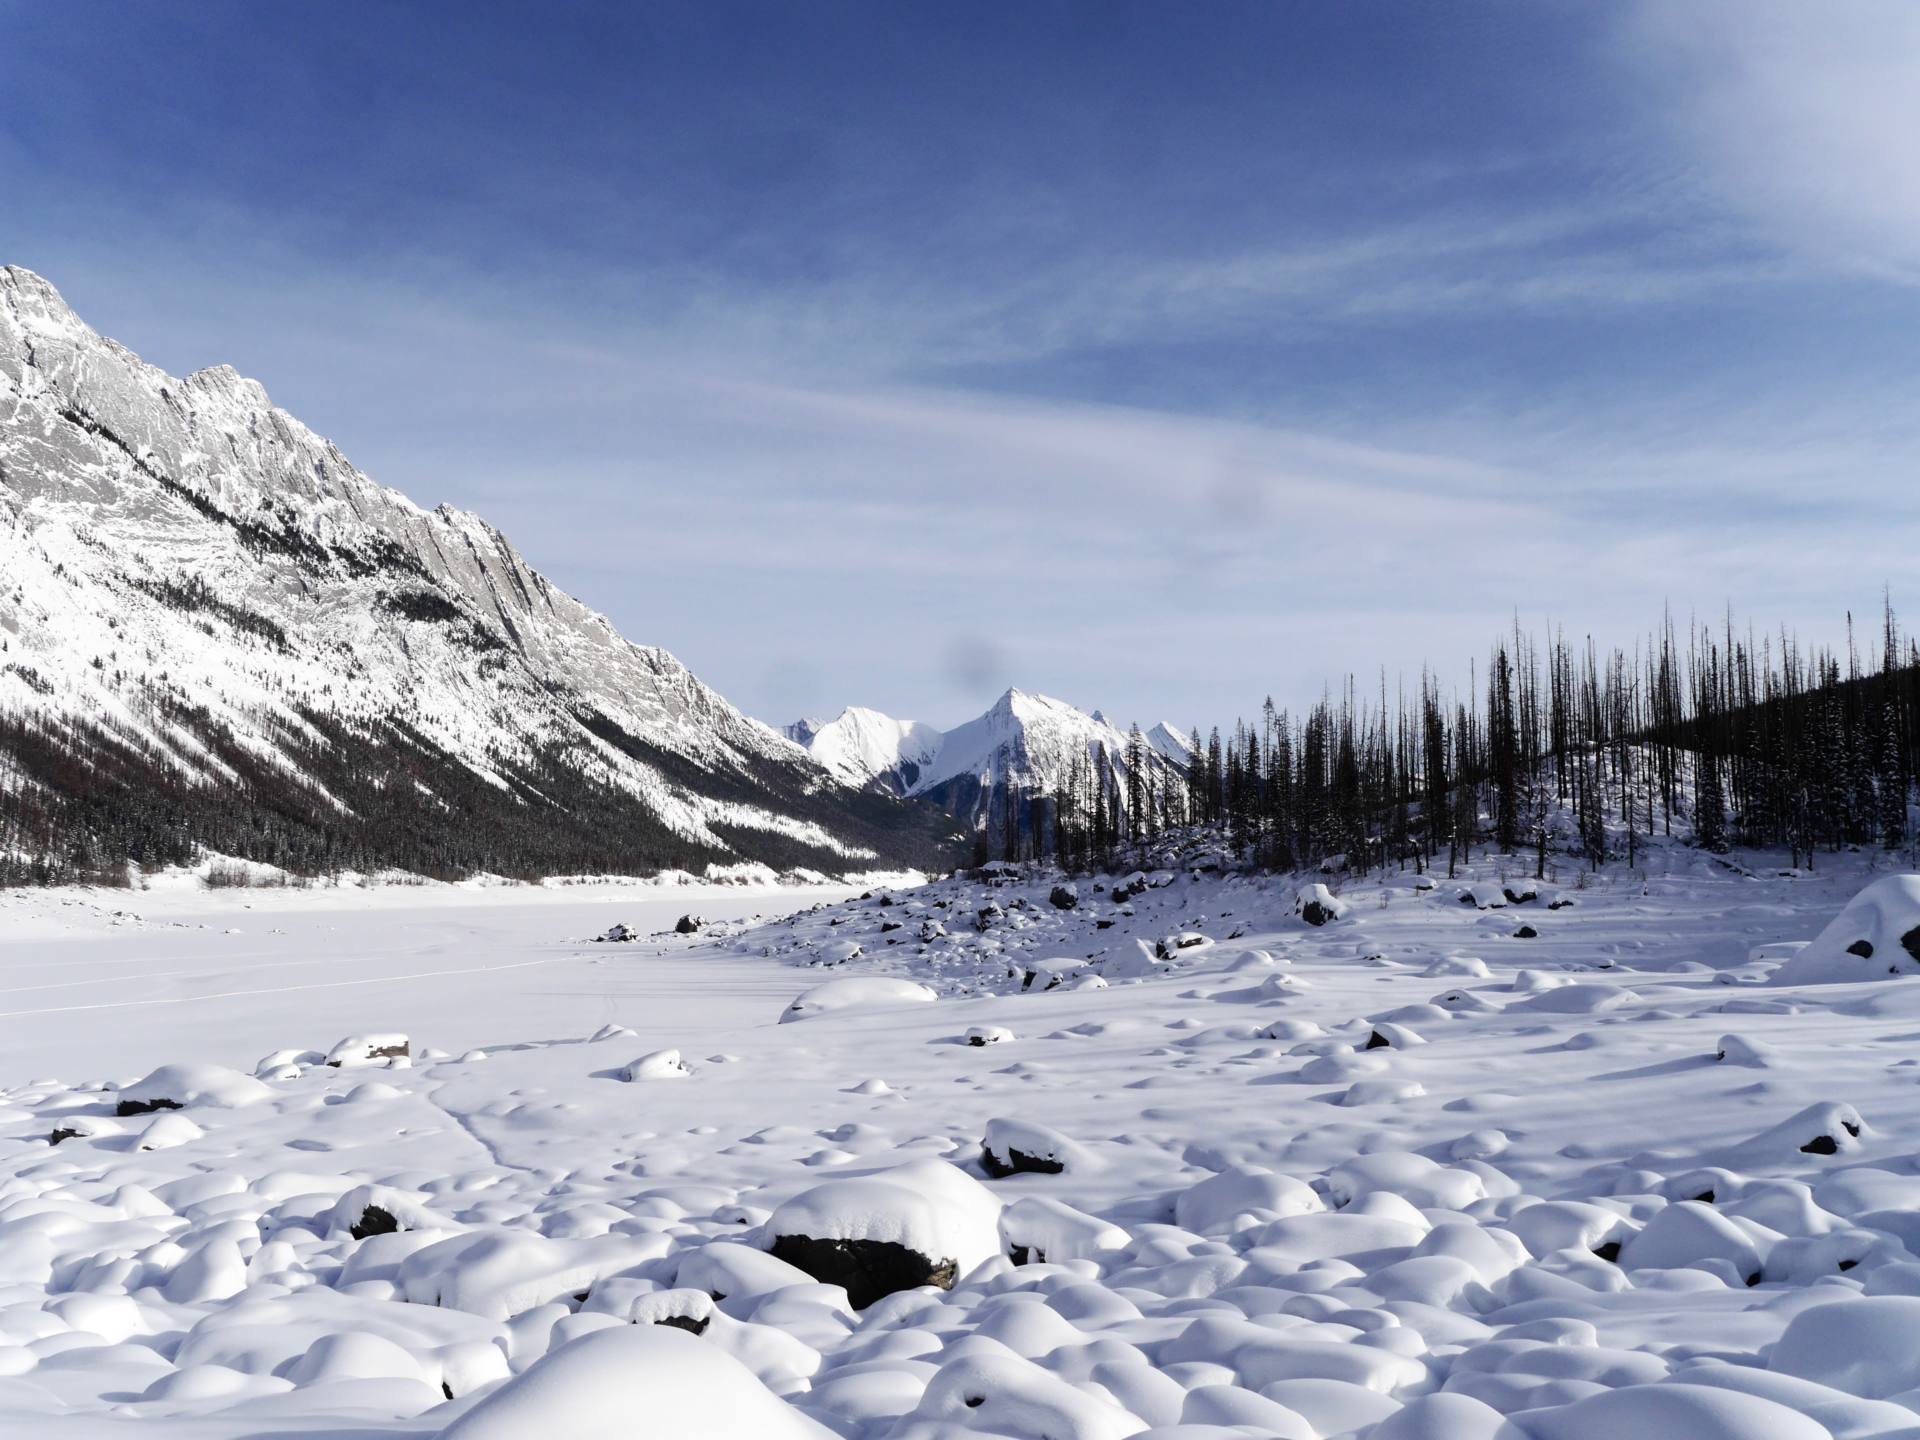 Una guía canadiense para la supervivencia en invierno